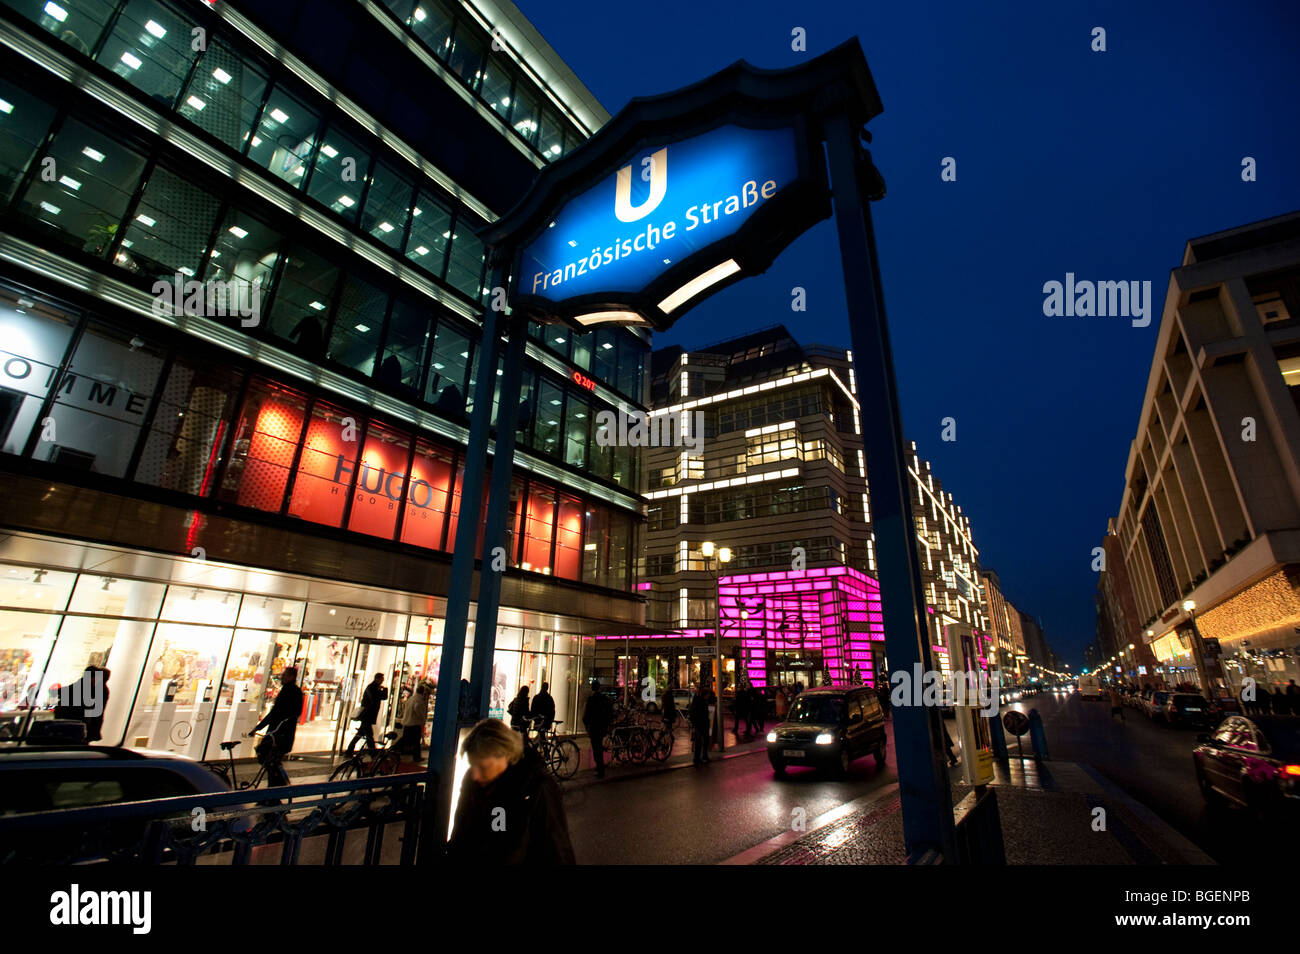 Ansicht der Friedrichstraße nachts am Eingang Franzosische Strasse u-Bahn Ststion in Mitte Berlin Deutschland Stockfoto